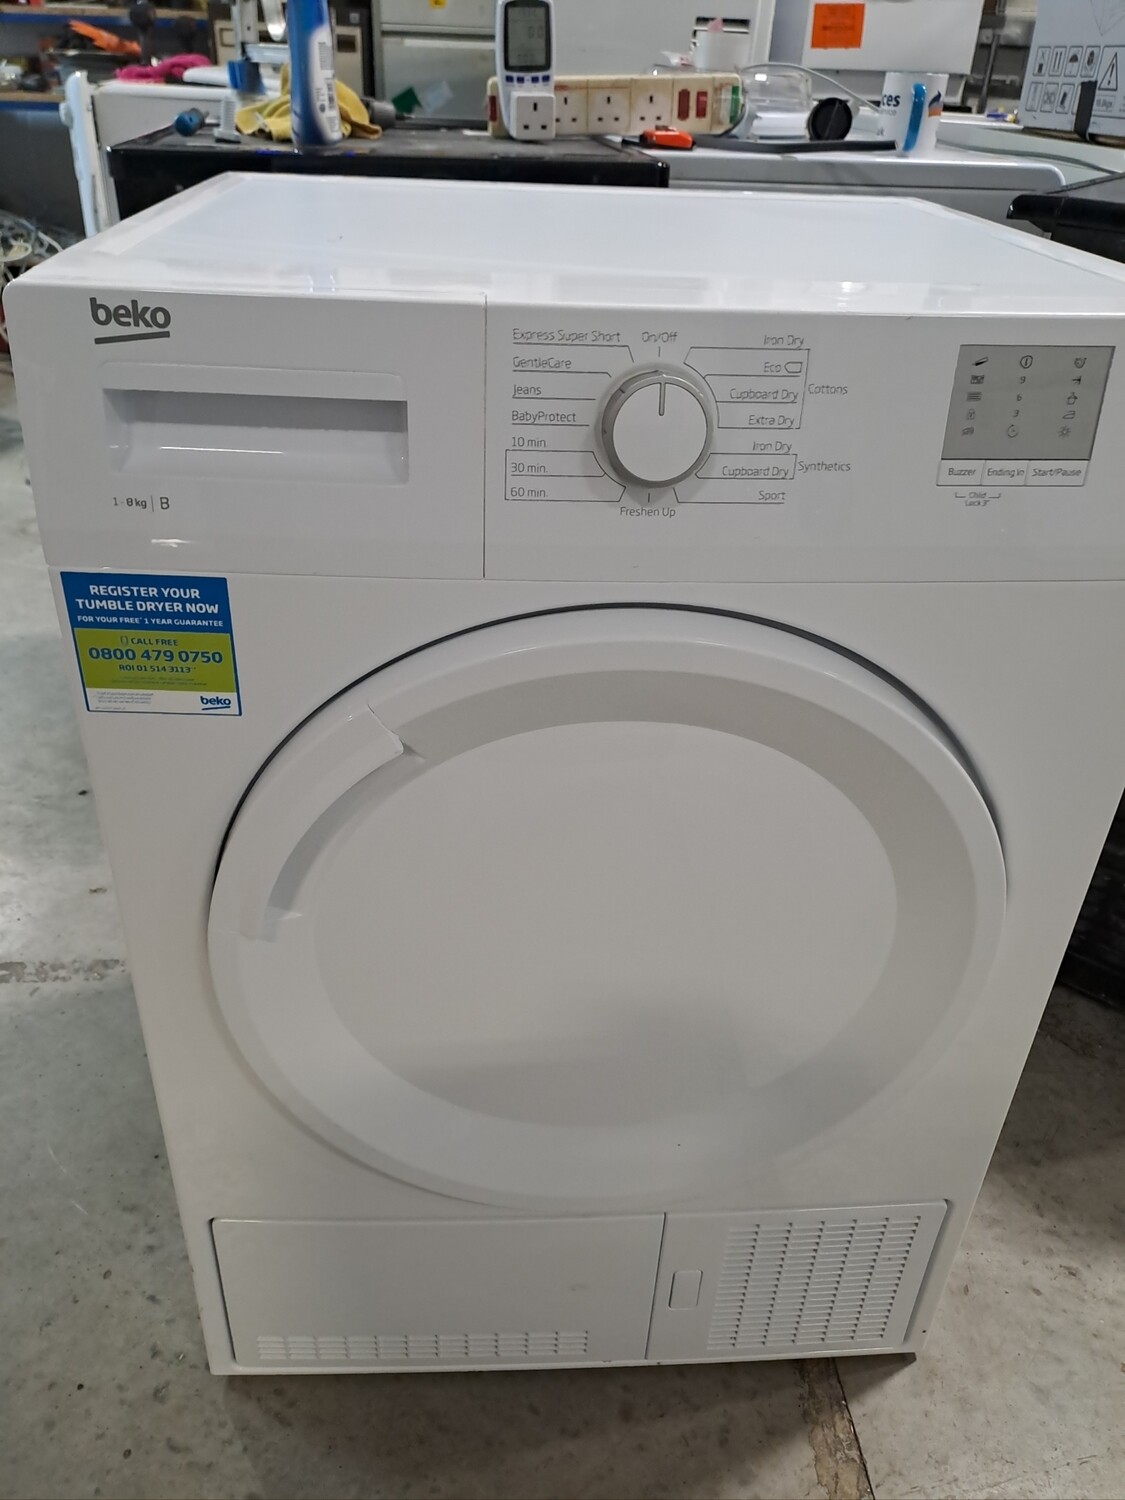 Beko DTGC8001RW 8kg Condenser Dryer White Refurbished 6 Months Guarantee 